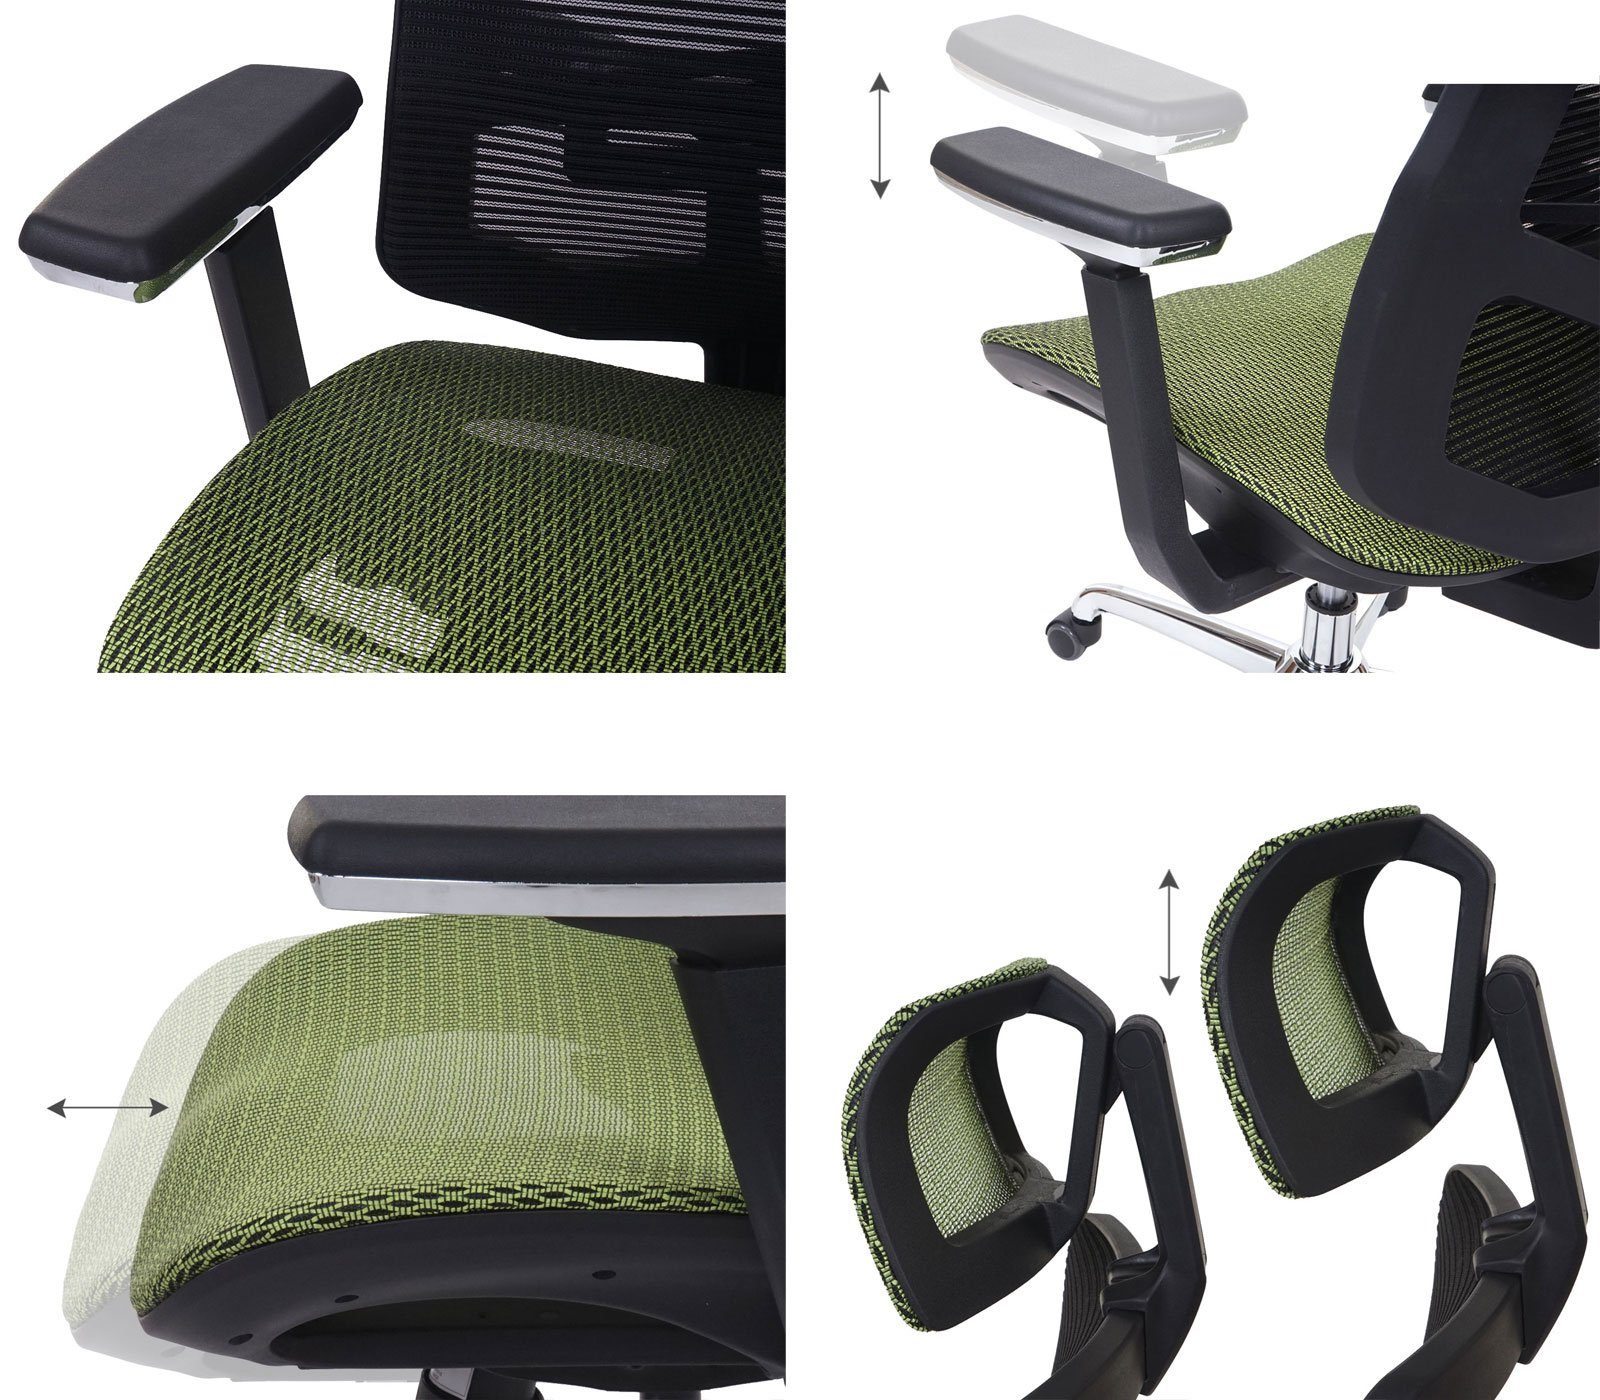 MCW Schreibtischstuhl höhenverstellbar, Armlehnen MCW-A58, Luftzirkulation grün,schwarz Netzbespannung verbessert